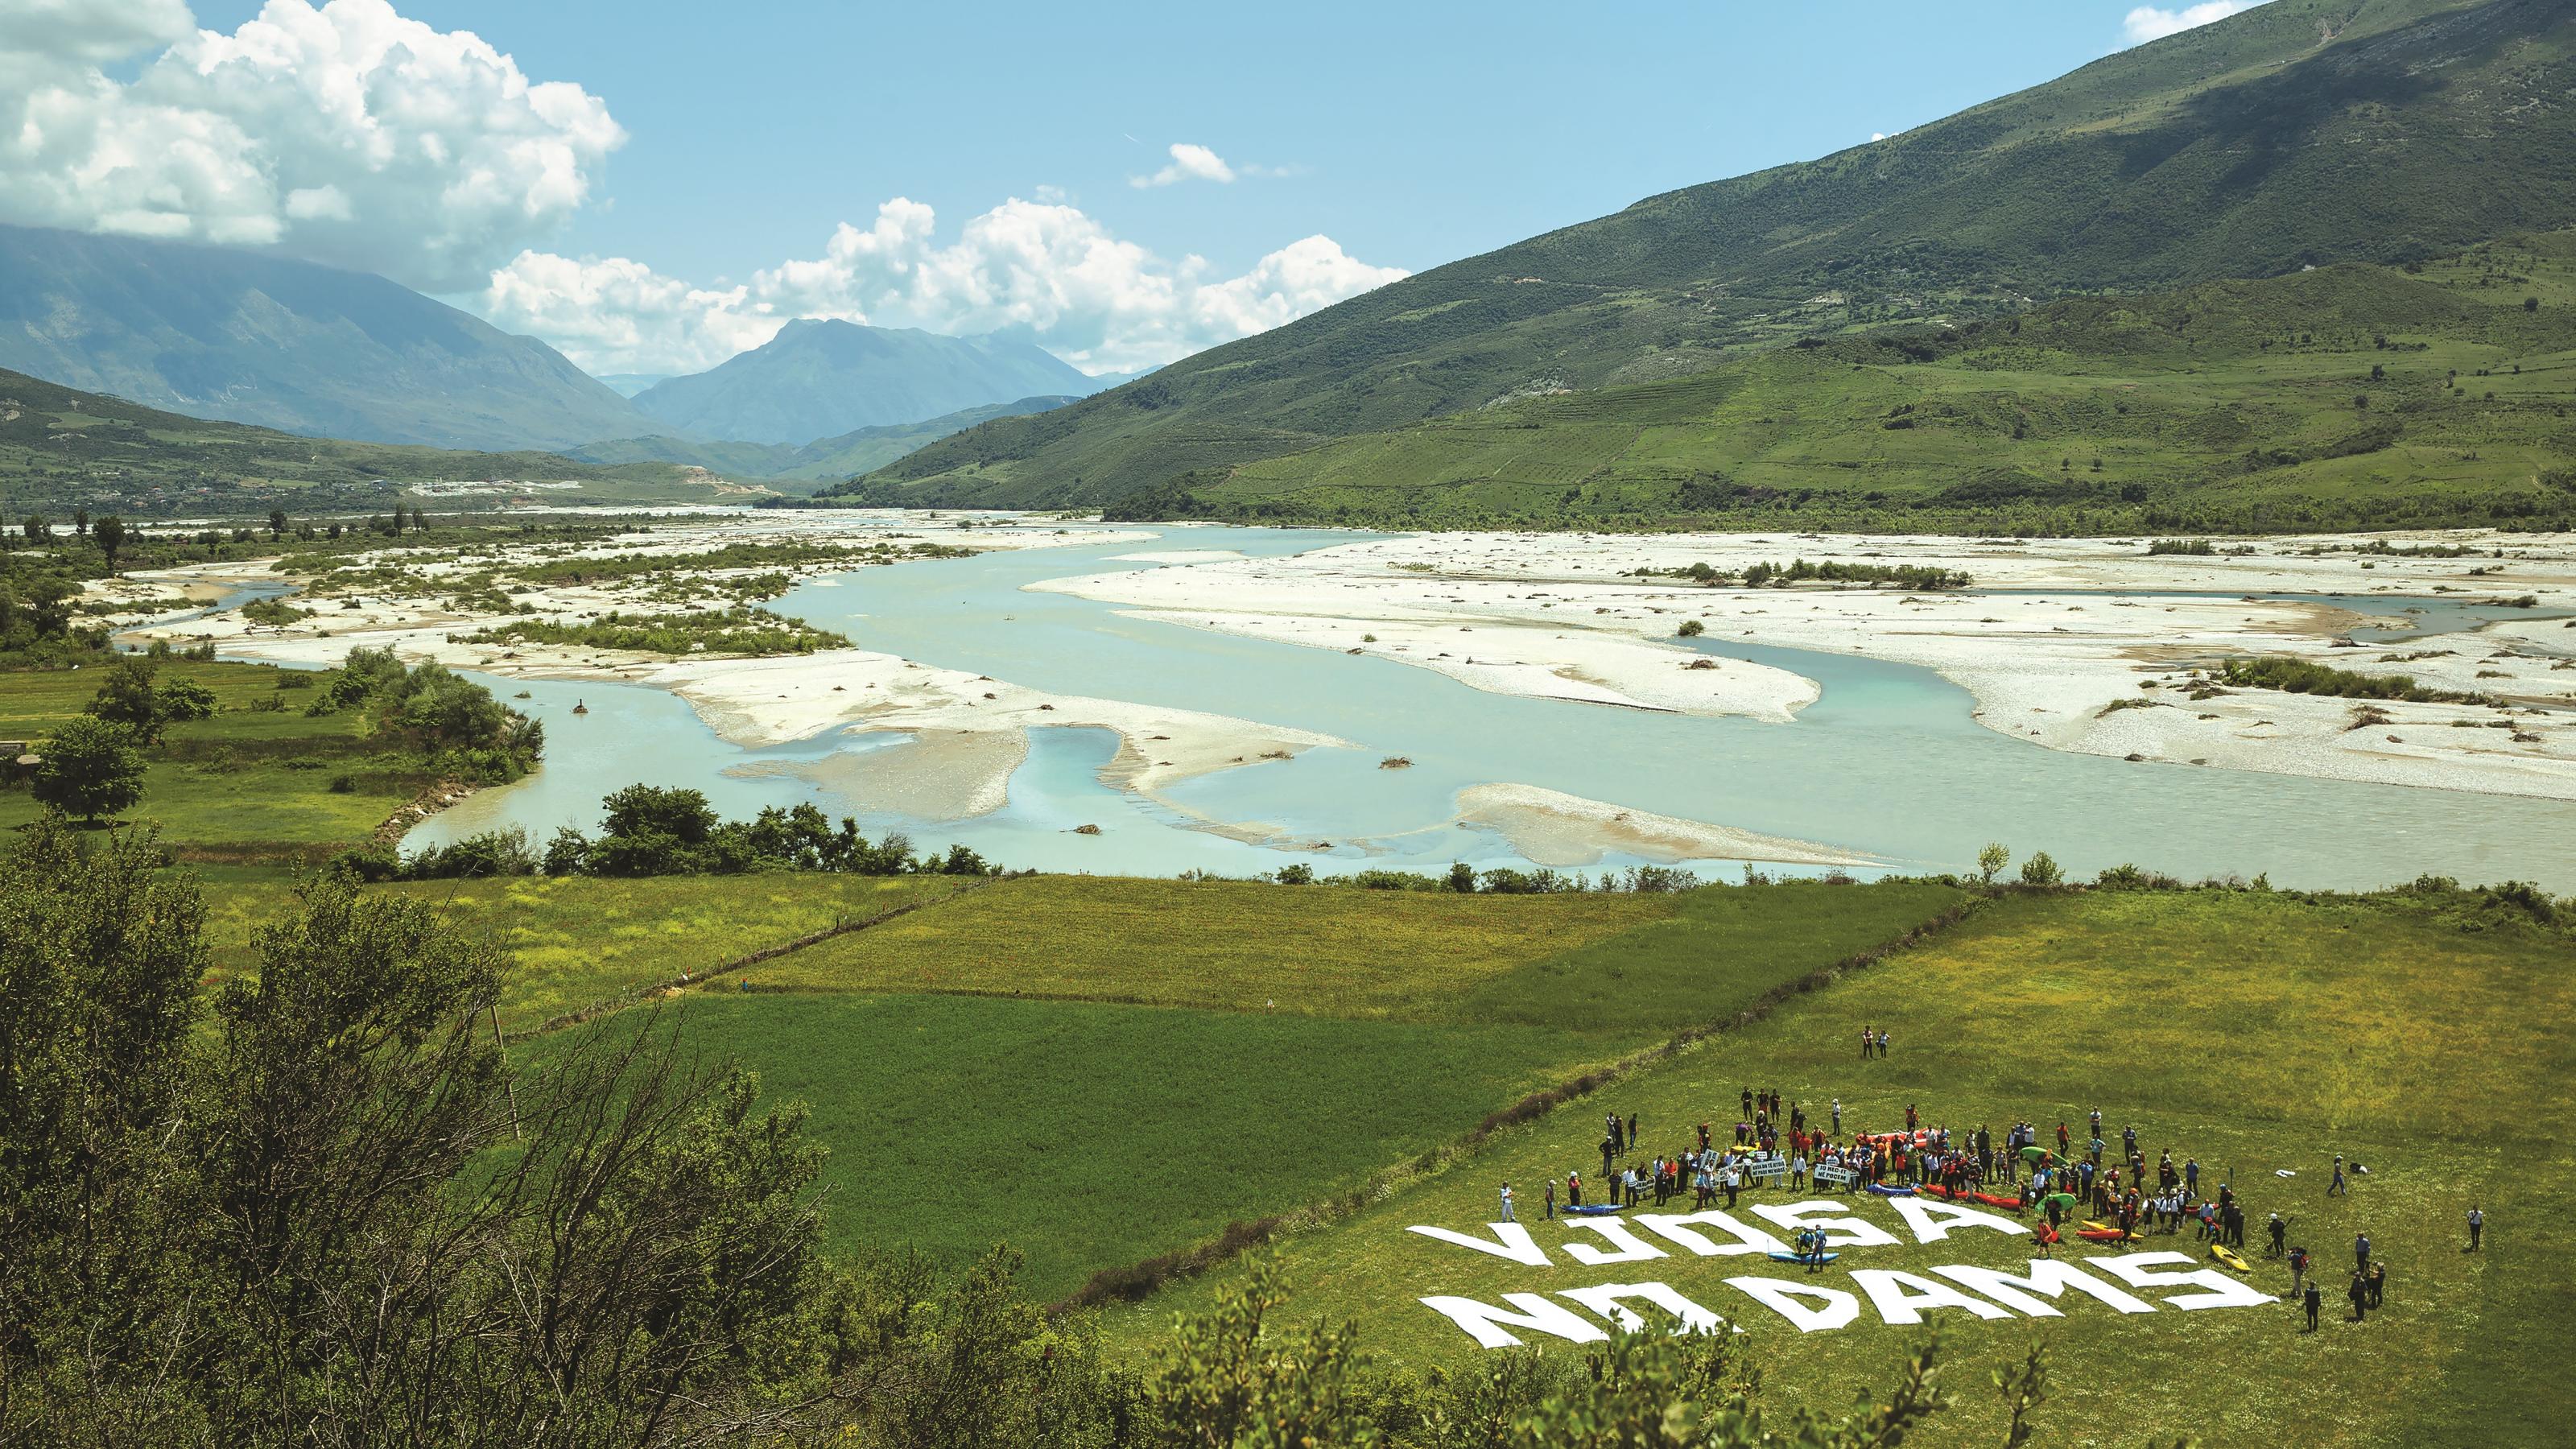 Flusslandschaft mit türkisfarbenem Wasser, große Schotterbänke, weiße Buchstaben auf der Wiese: Vjosa no dams